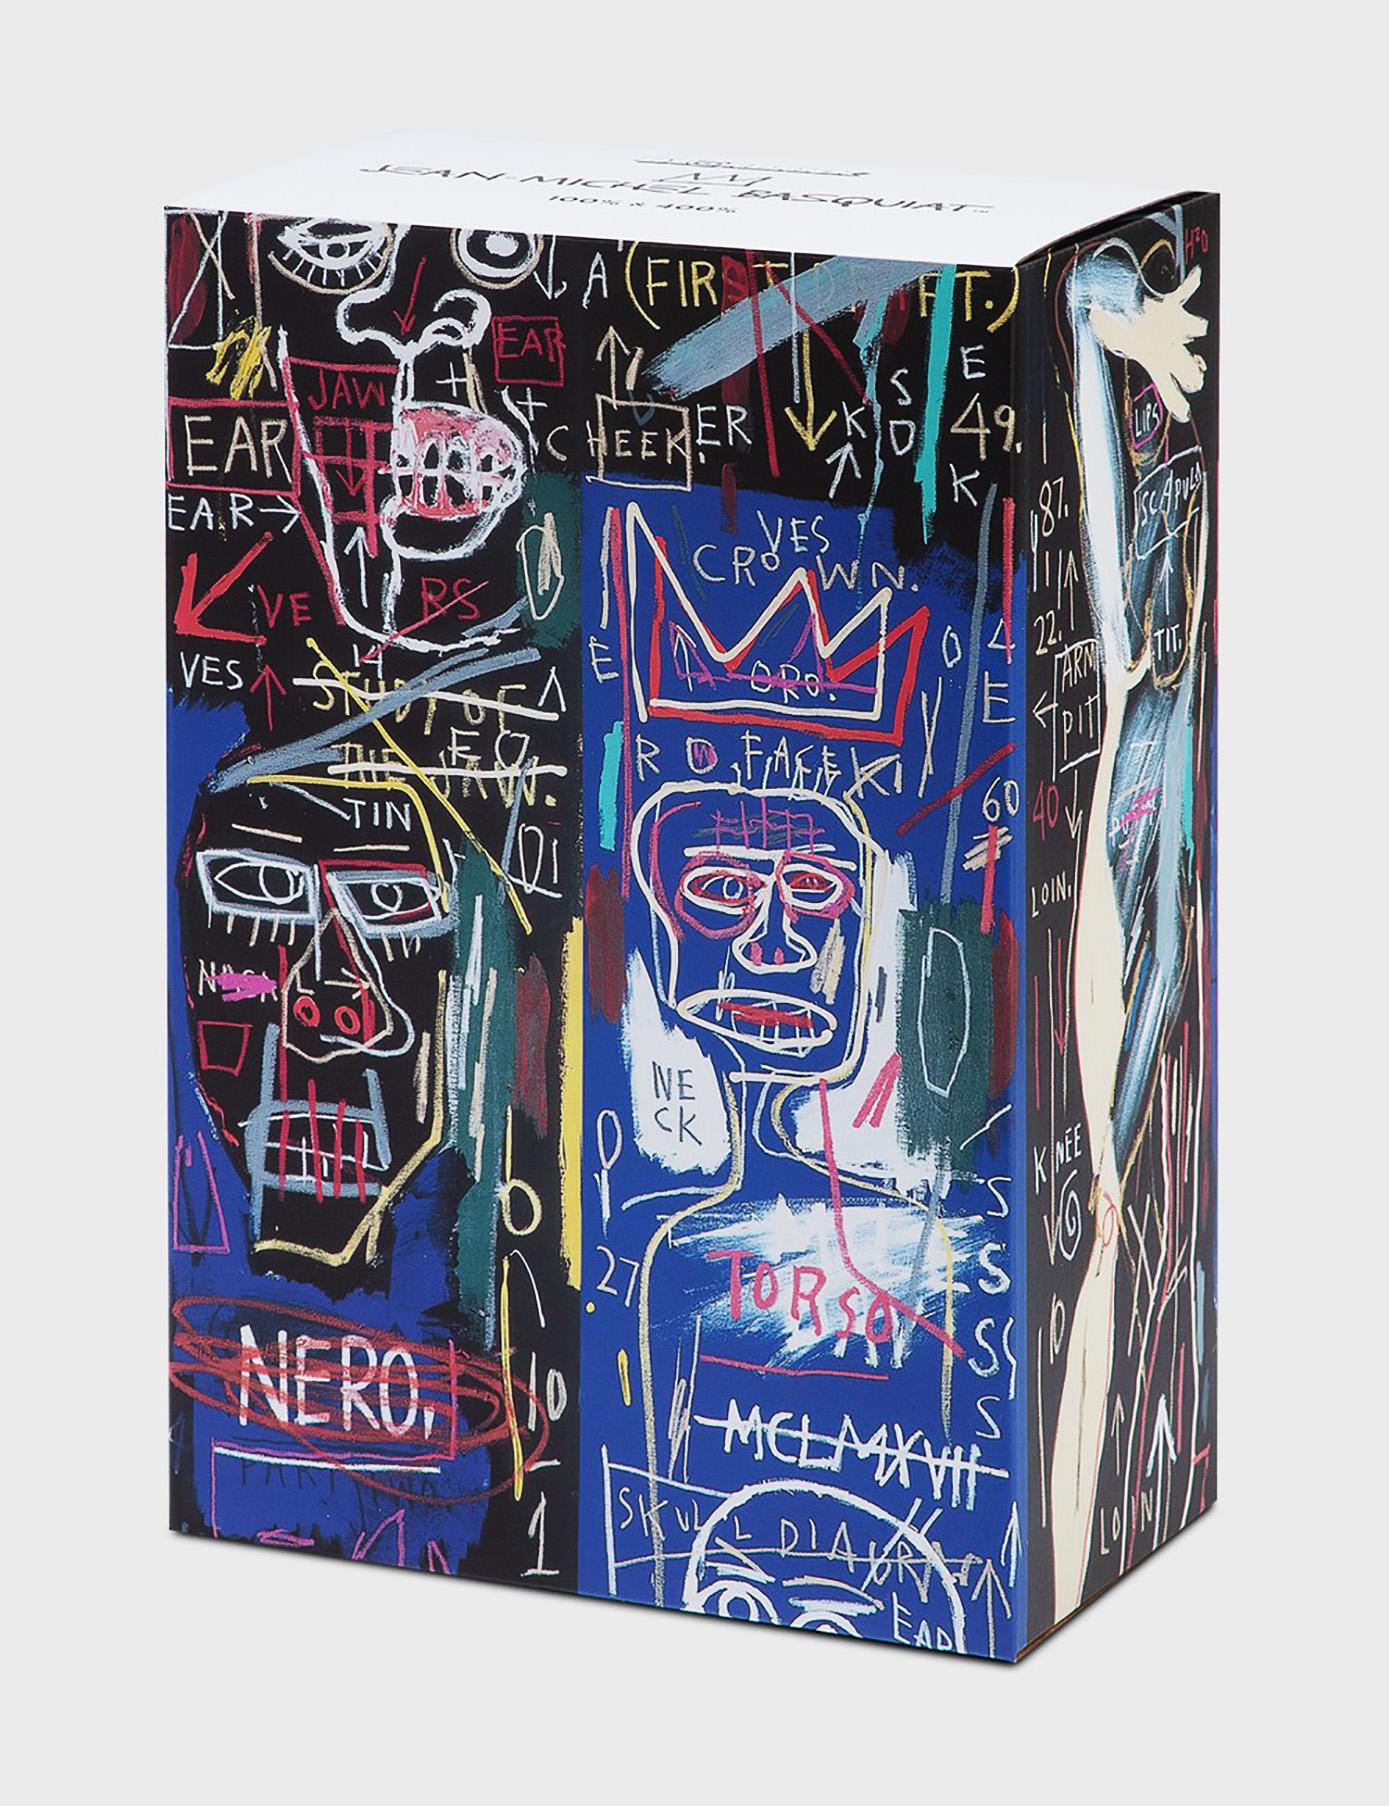 Jean-Michel Basquiat Bearbrick 1000% Figures : Ensemble de deux œuvres :
Des objets de collection uniques et intemporels sous la marque et la licence de la succession de Jean-Michel Basquiat Cet ensemble révèle des détails de l'œuvre de Jean-Michel